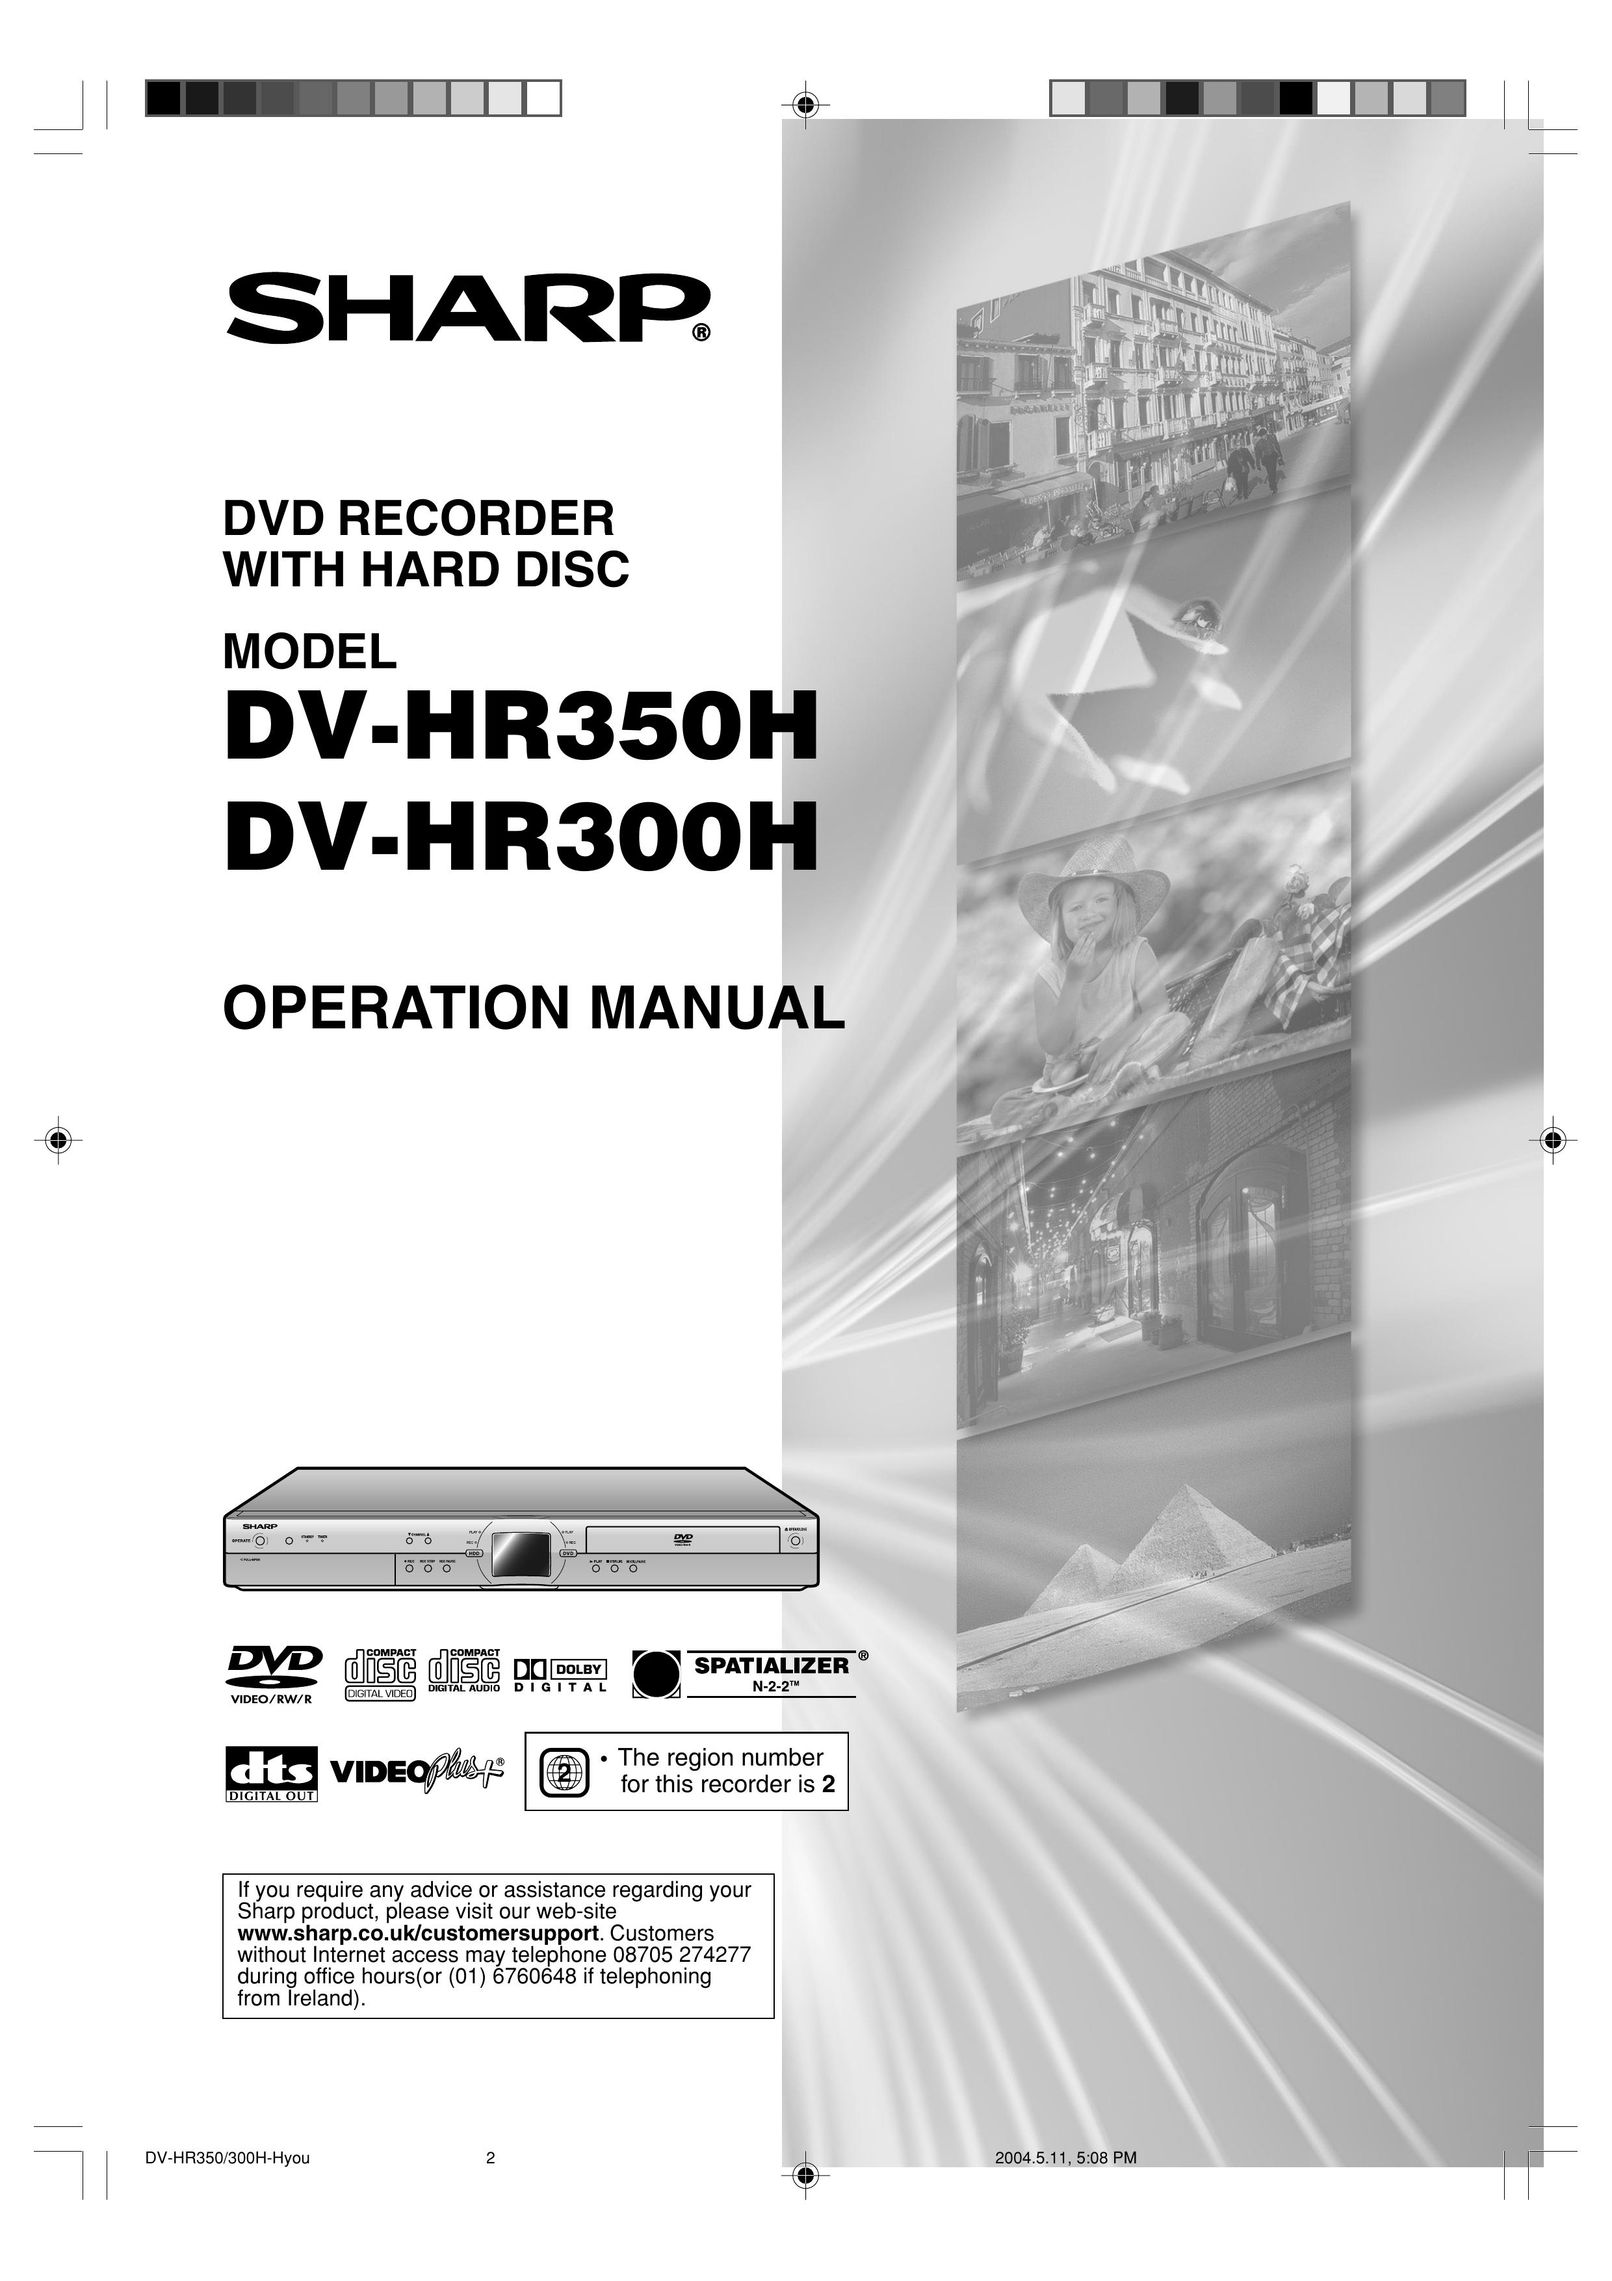 Sharp DV-HR350H DVR User Manual